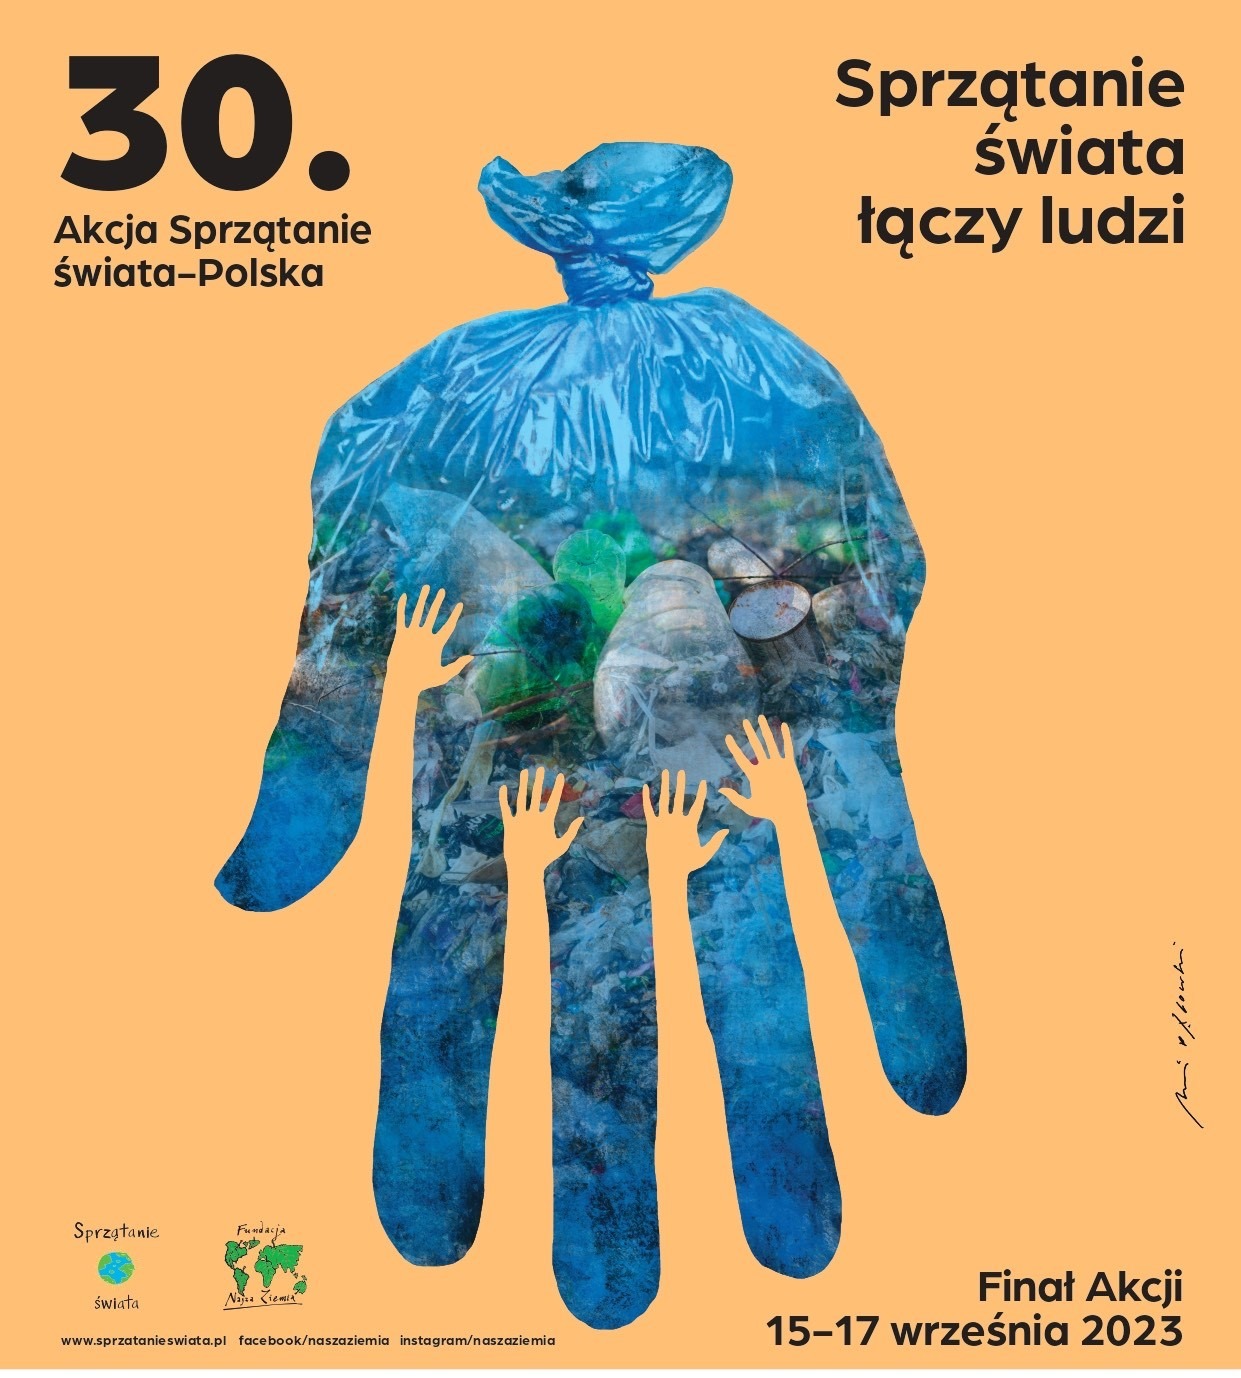 30 Akcja Sprzątanie  Świata - Polska 2023 - Obrazek 1